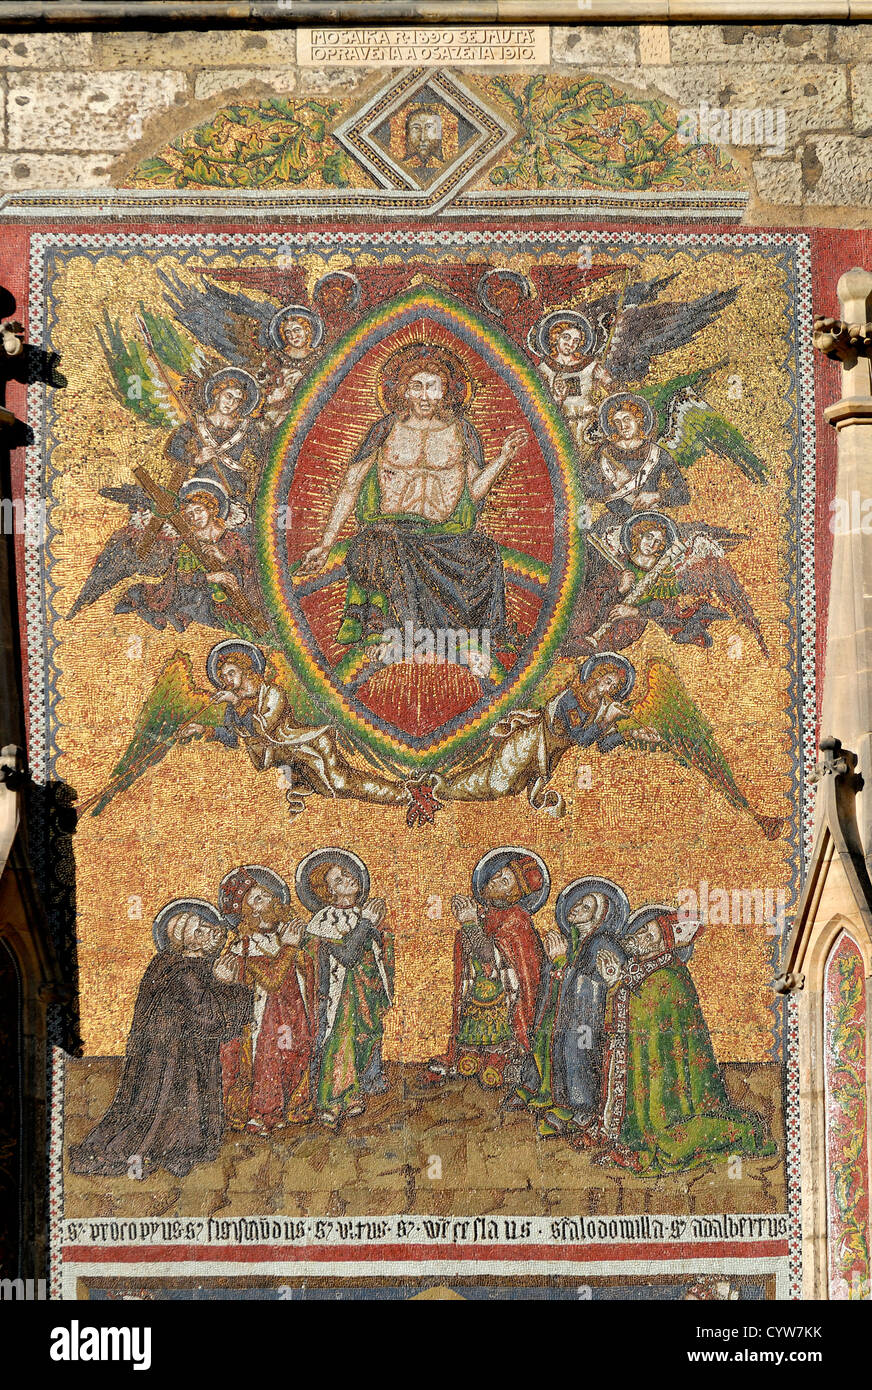 Prag, Tschechische Republik. St-Veits-Dom. Golden-Portal - Mosaik des jüngsten Gerichts, 14thC von venezianischen Künstlern Stockfoto